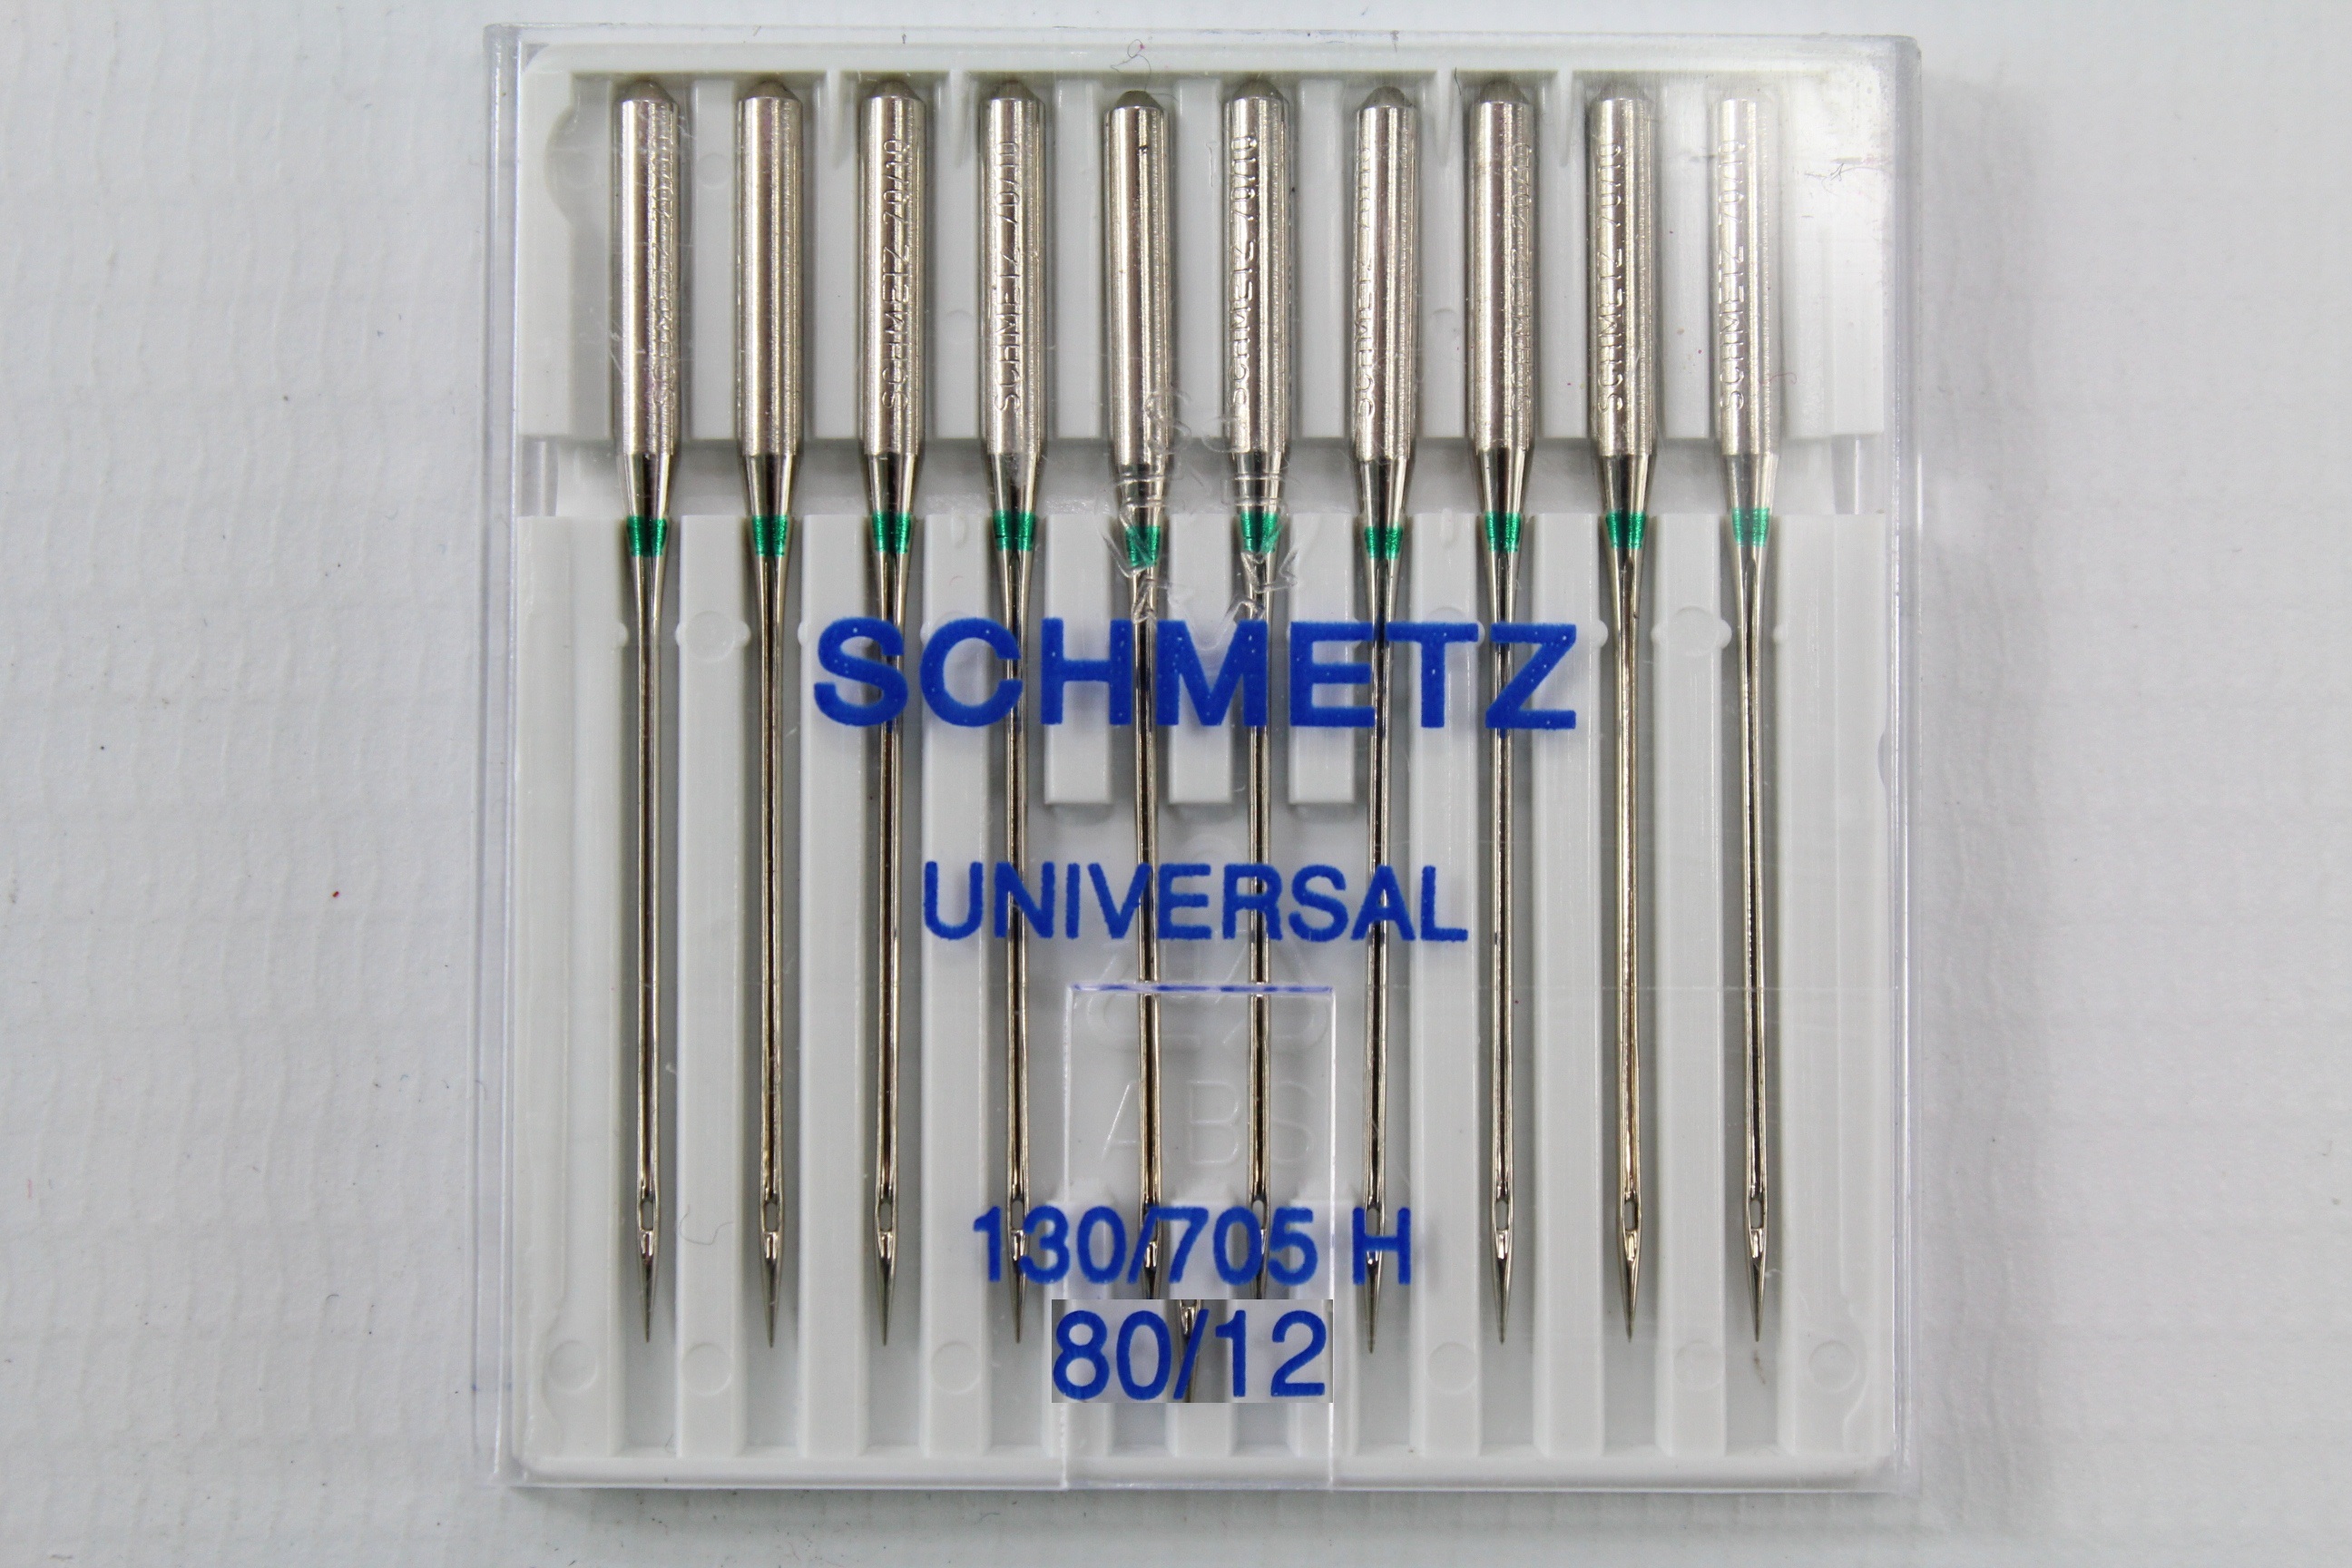 Schmetz Universal 130/705 H 80/12